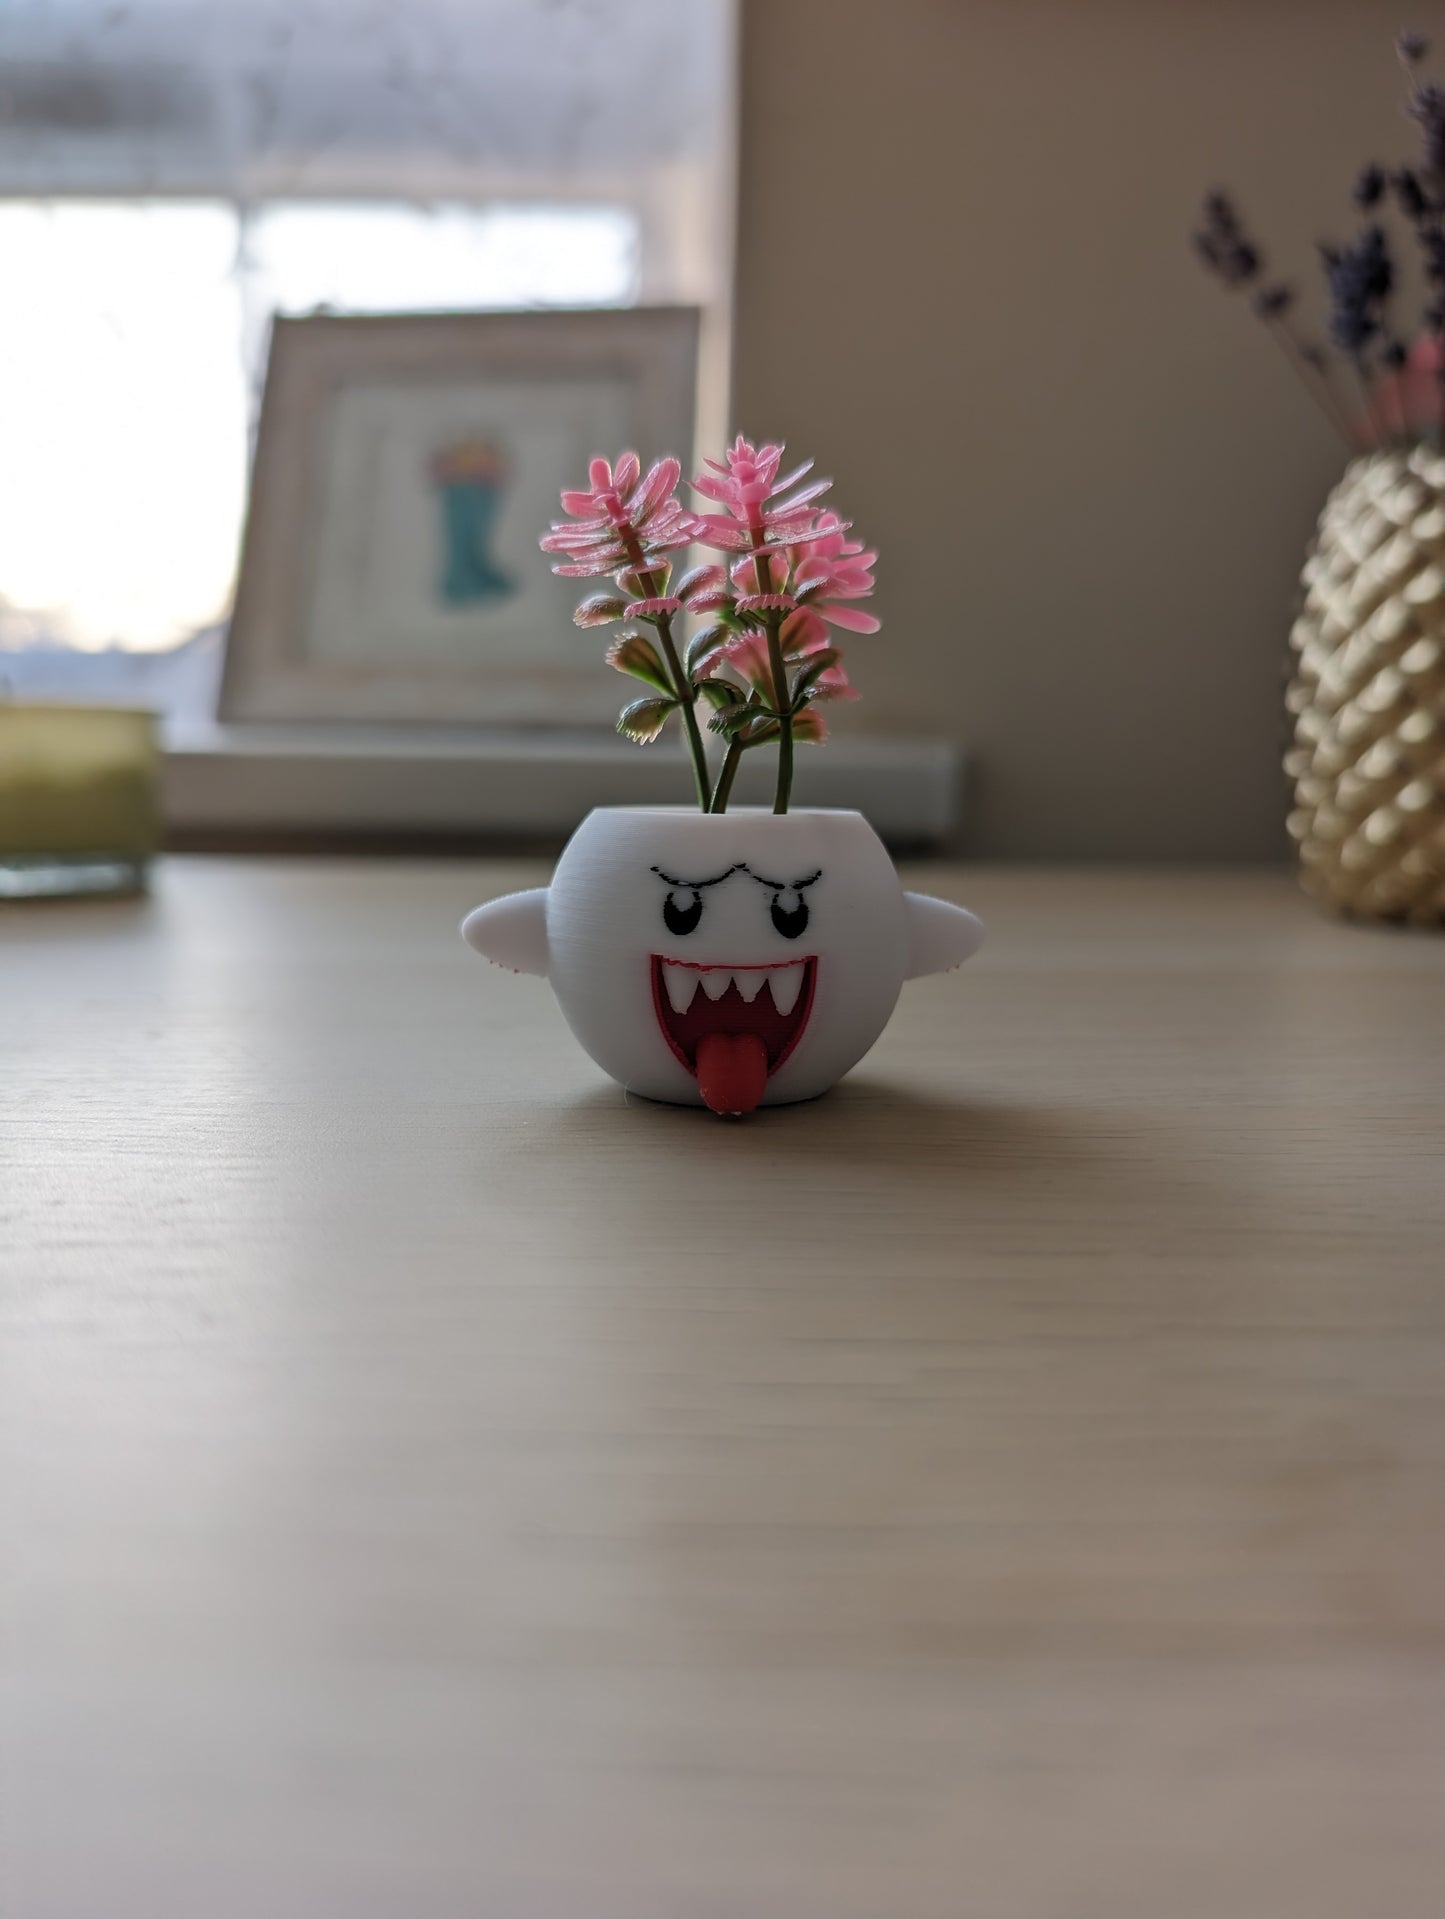 Extra small Mario Boo planter on desk